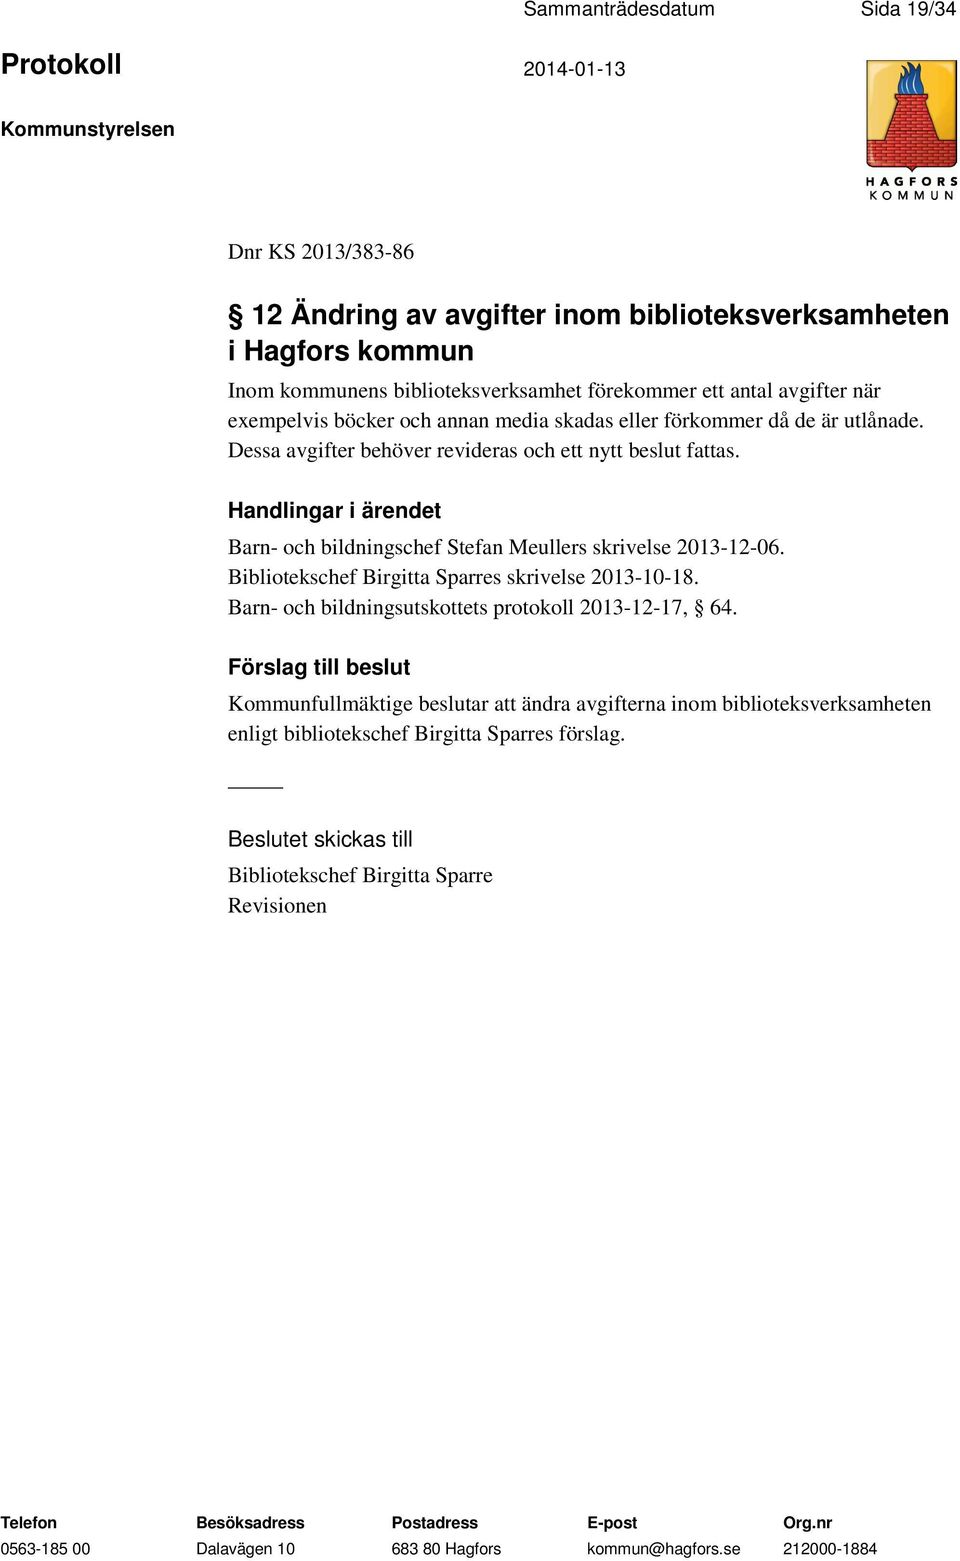 Handlingar i ärendet Barn- och bildningschef Stefan Meullers skrivelse 2013-12-06. Bibliotekschef Birgitta Sparres skrivelse 2013-10-18.